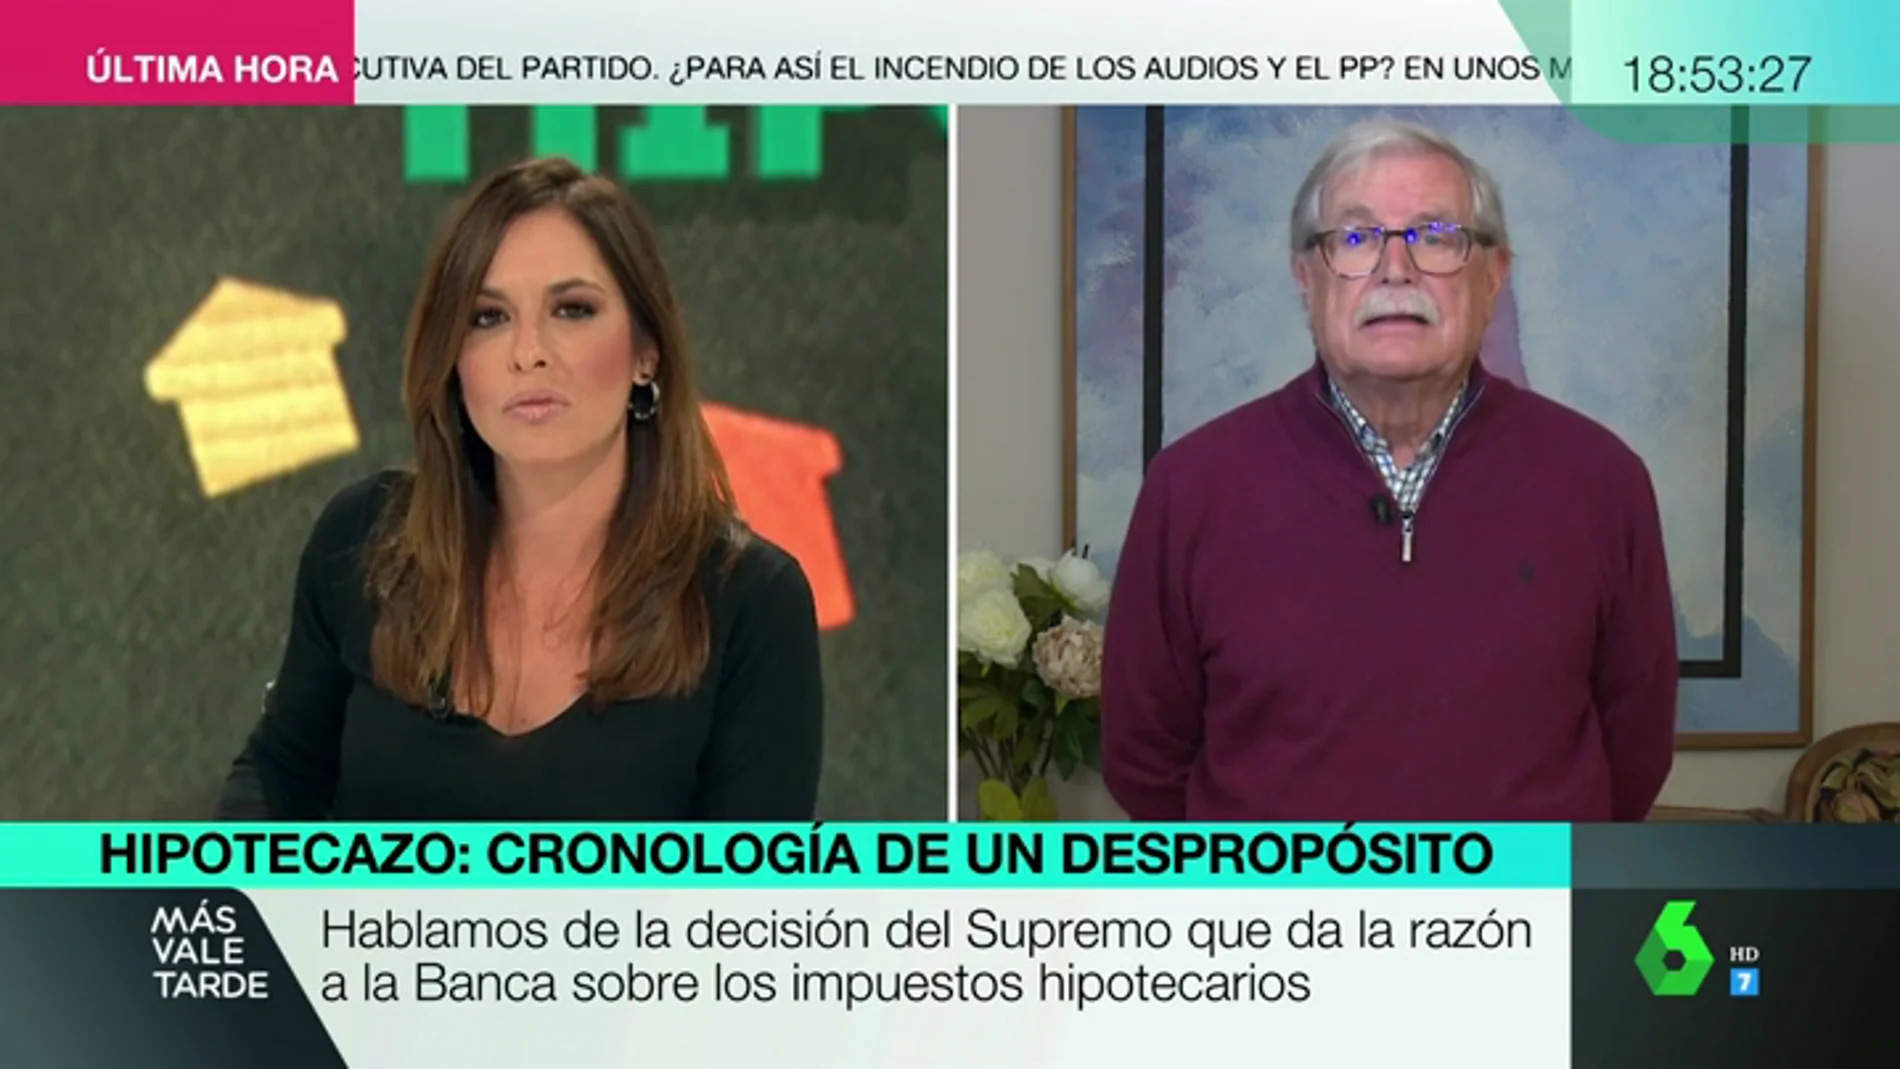 Joaquín Giménez: "Los jueces tienen que interpretar la ley desde unos valores que no son los que cotizan en Bolsa"